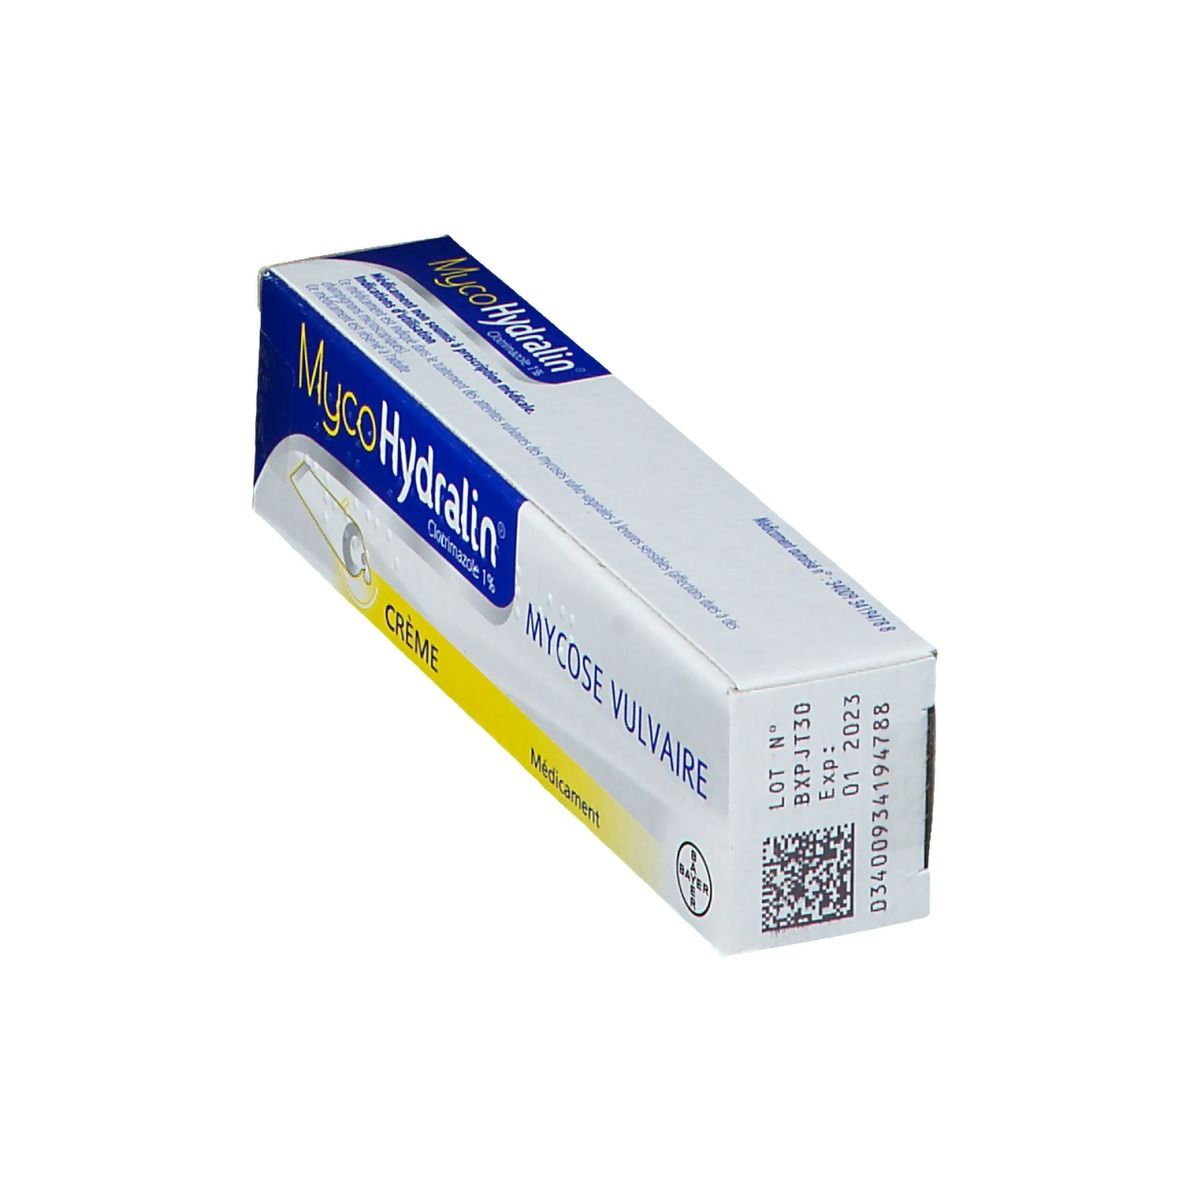 MYCOHYDRALIN crème tube de 20 g - Vente en ligne  FRANCE